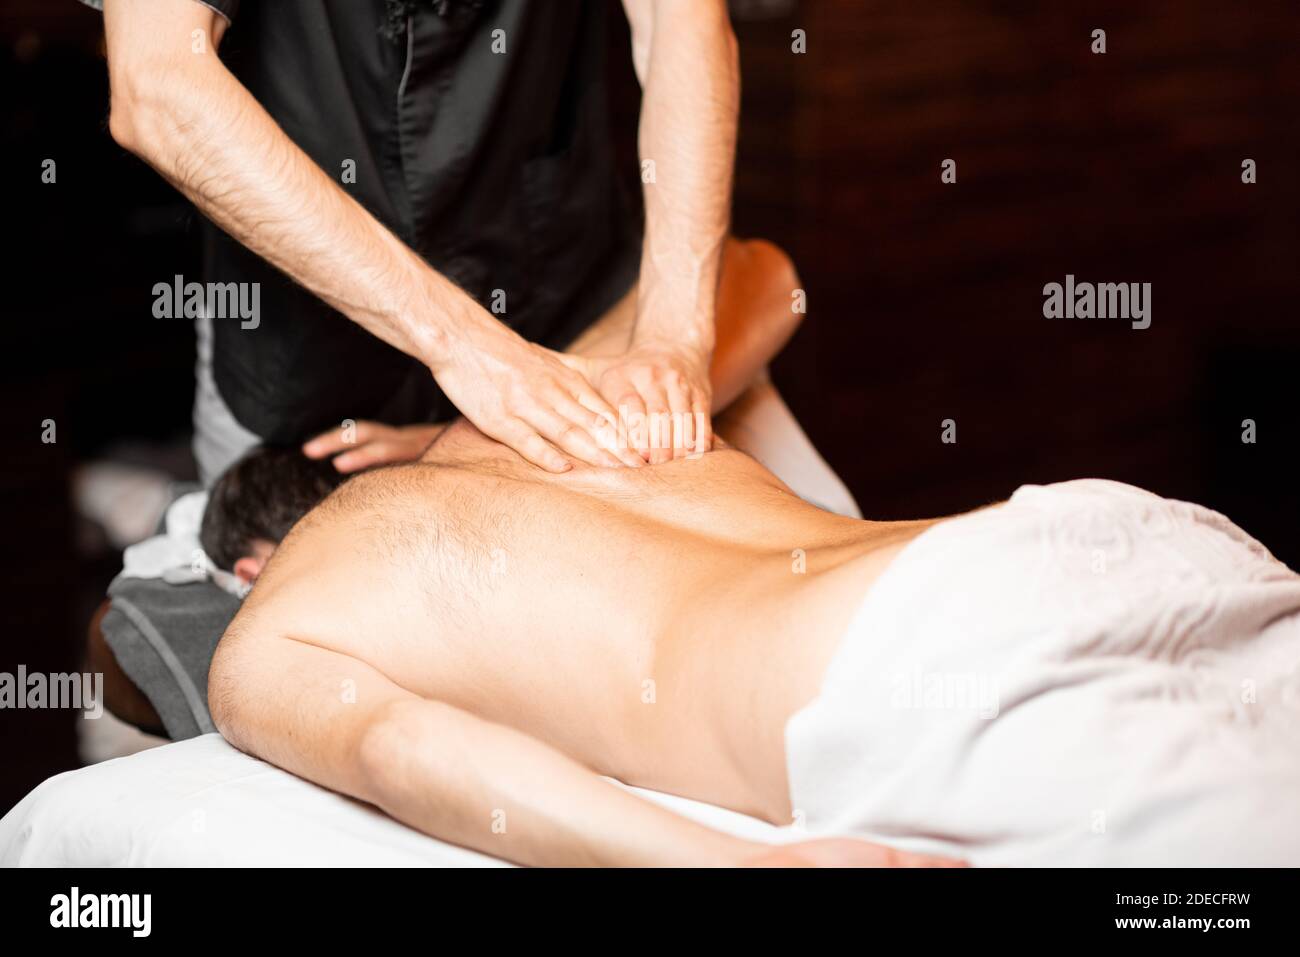 Mature Amateur Massage